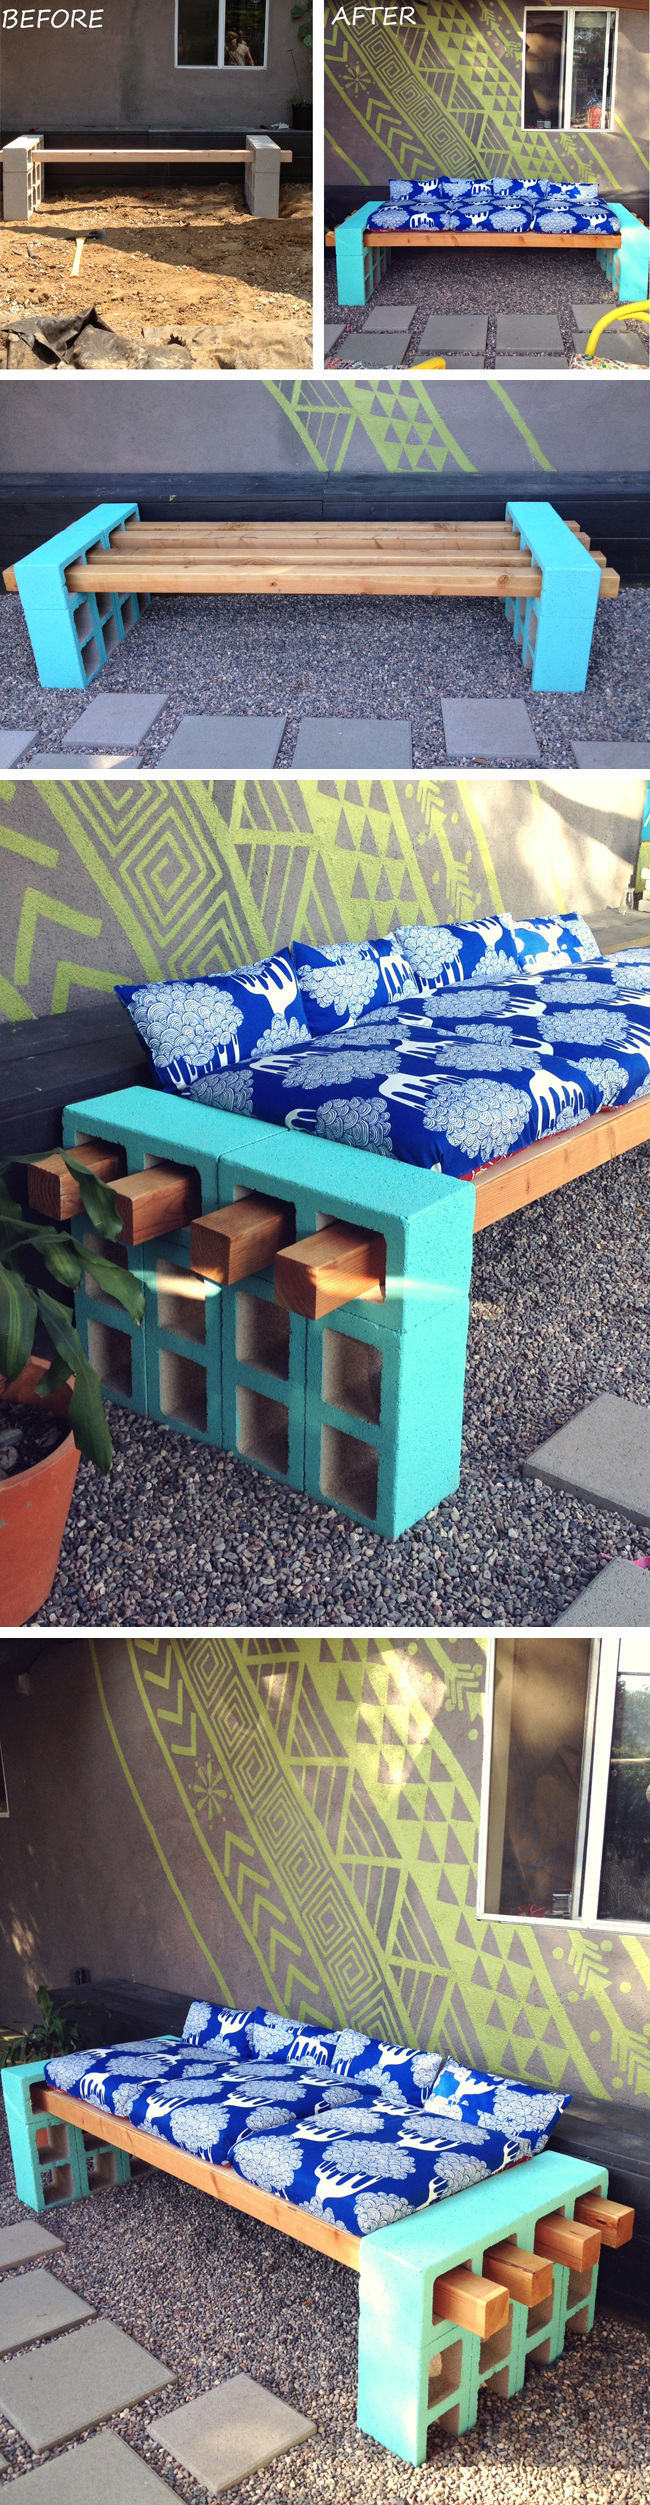 DIY concrete block bench seating | furniture design | awesome DIY inspiration